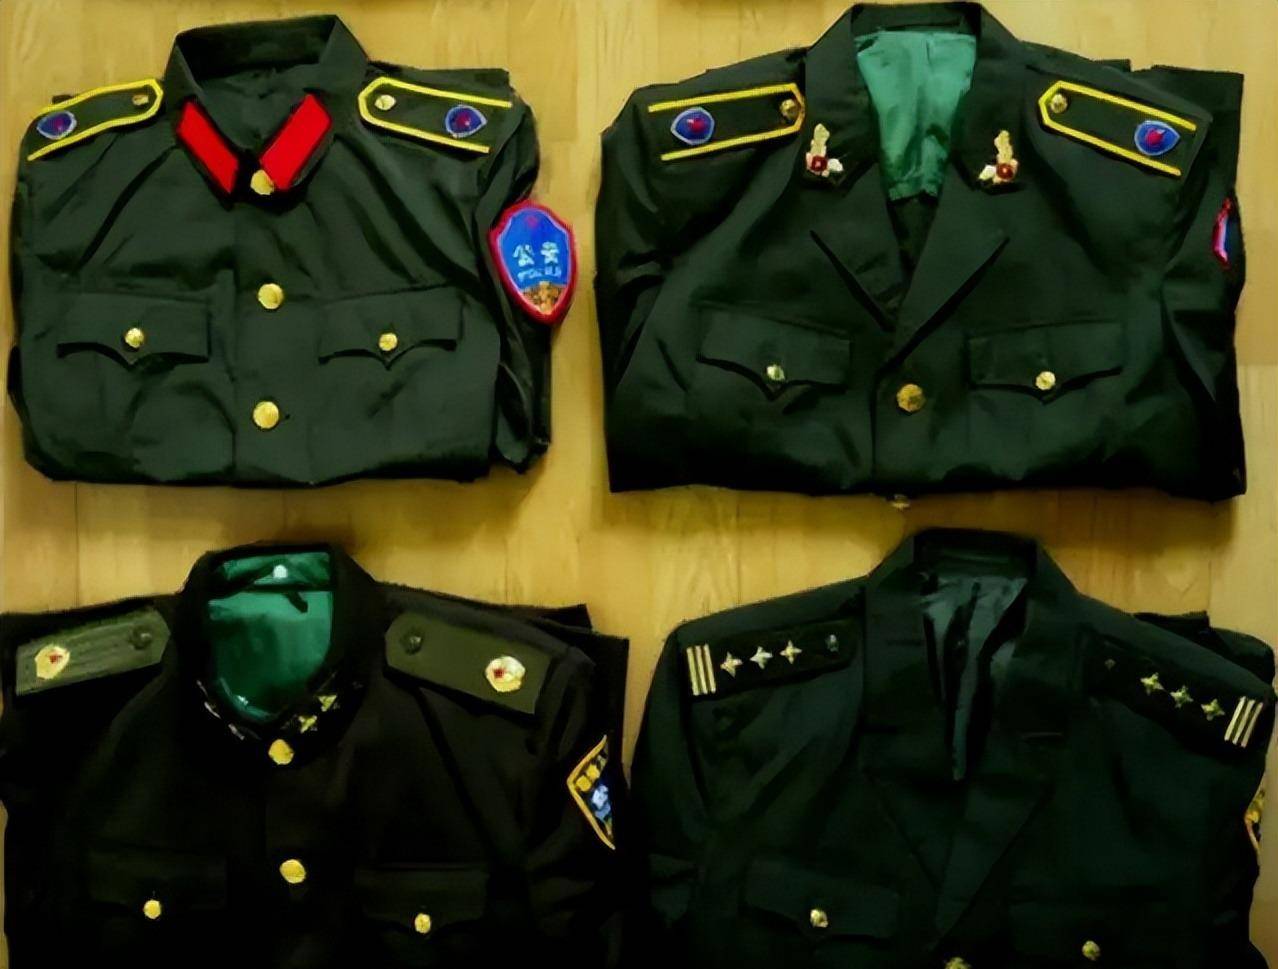 目前,我国警察队伍使用的警服,属于99式警服的改进版